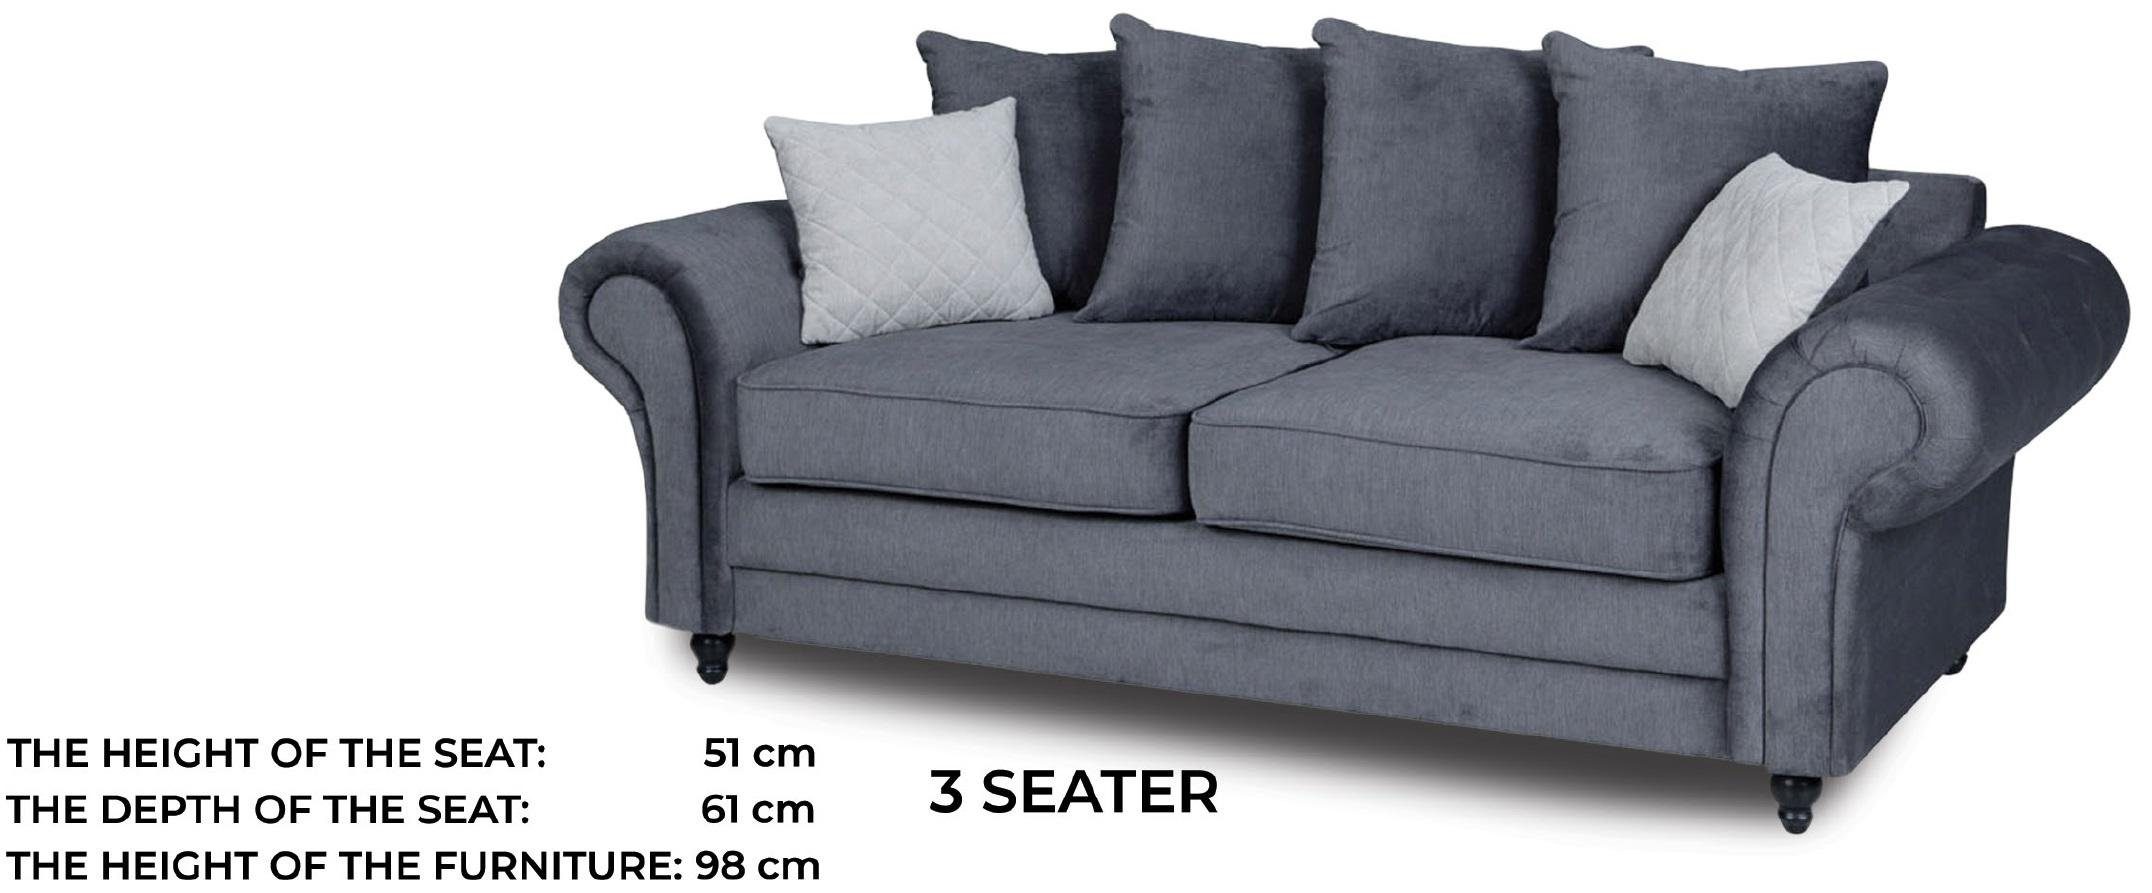 JVmoebel Sofa Luxus Grauer Polster Dreisitzer moderne Couch Stilvoll Neu, Made in Europe